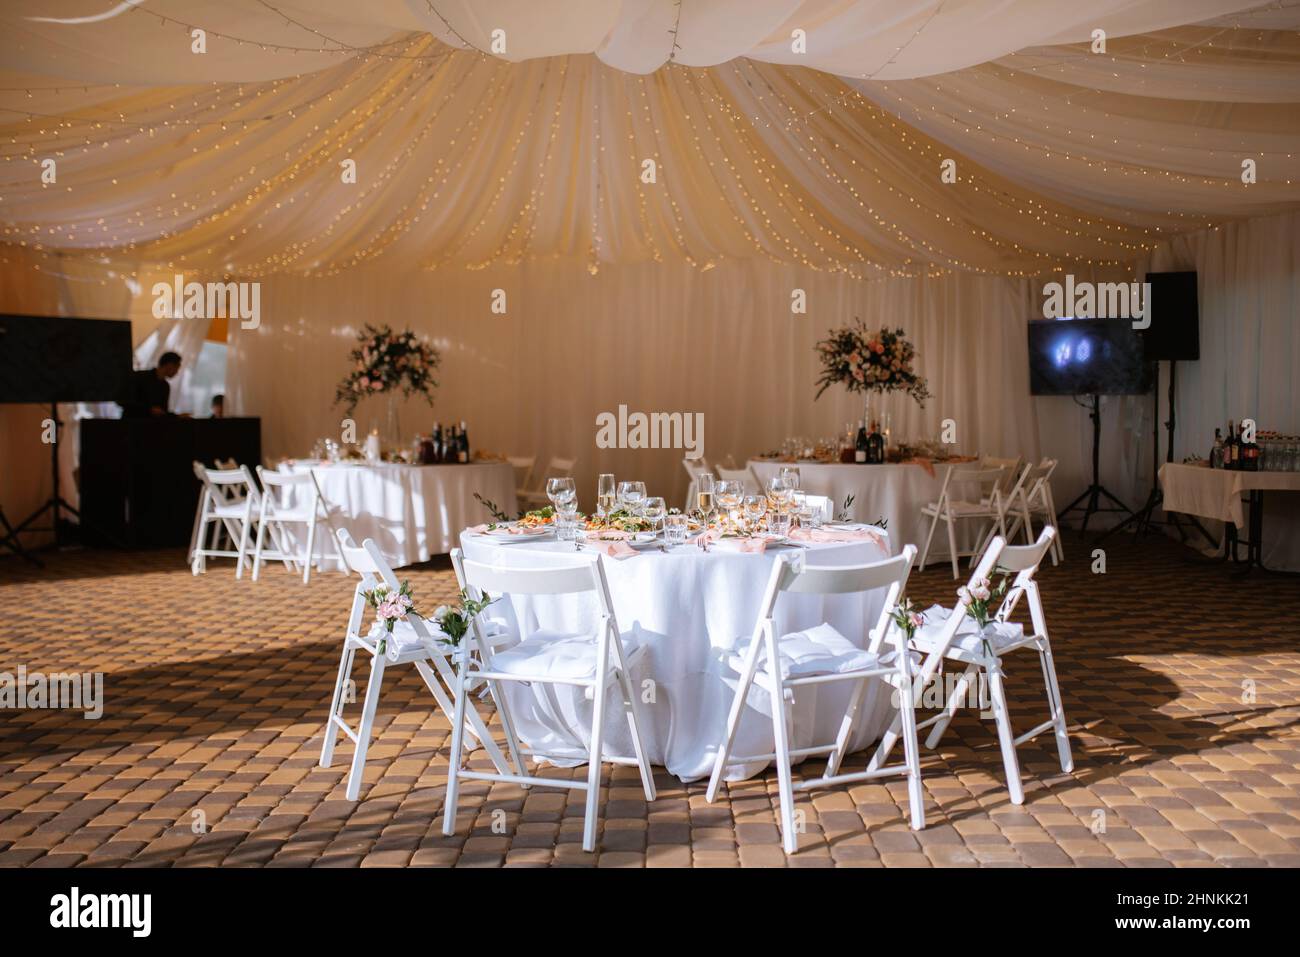 Decoración de salón banquetes fotografías e imágenes de - Alamy